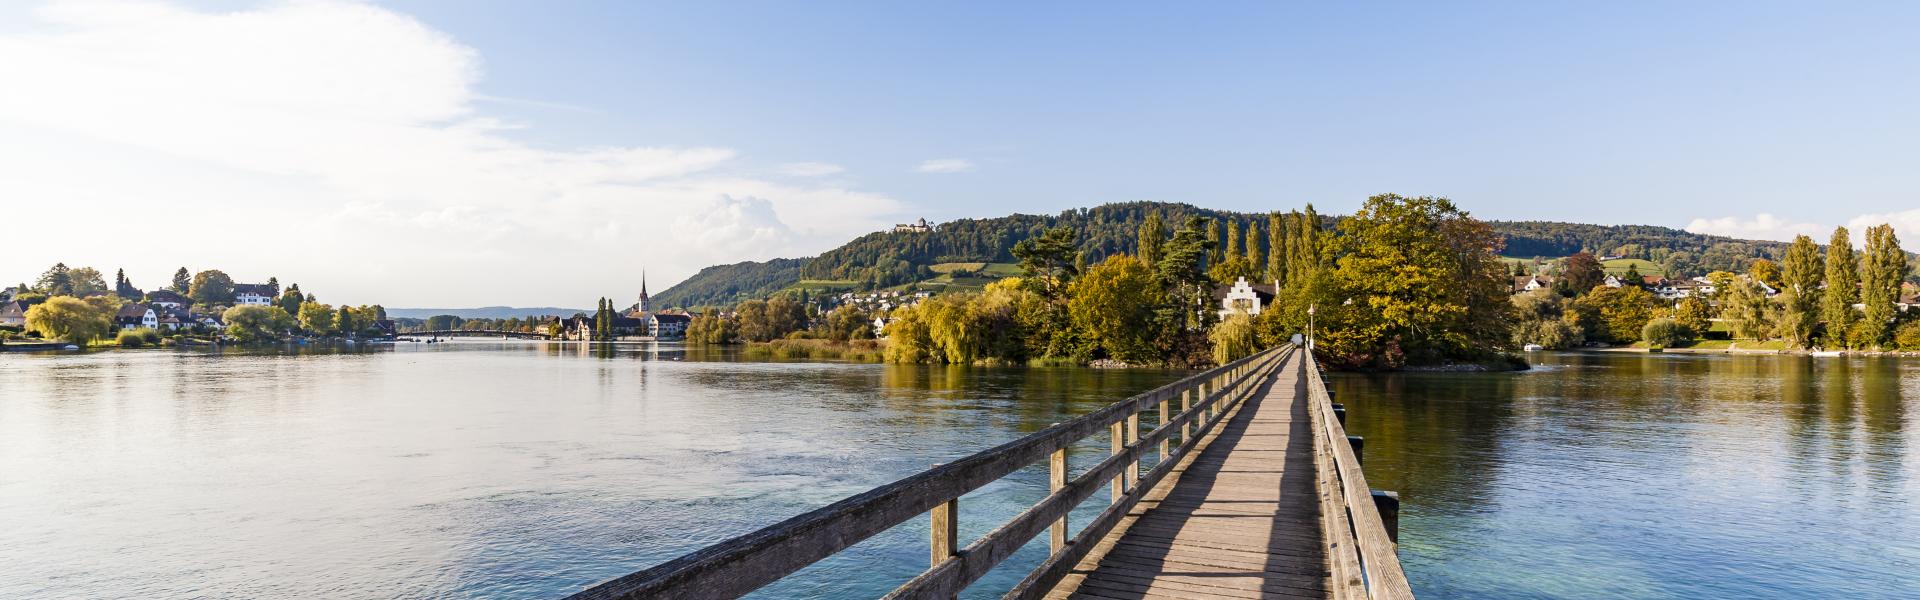 Urlaub Thurgau mit Ferienwohnung oder Ferienhaus - e-domizil